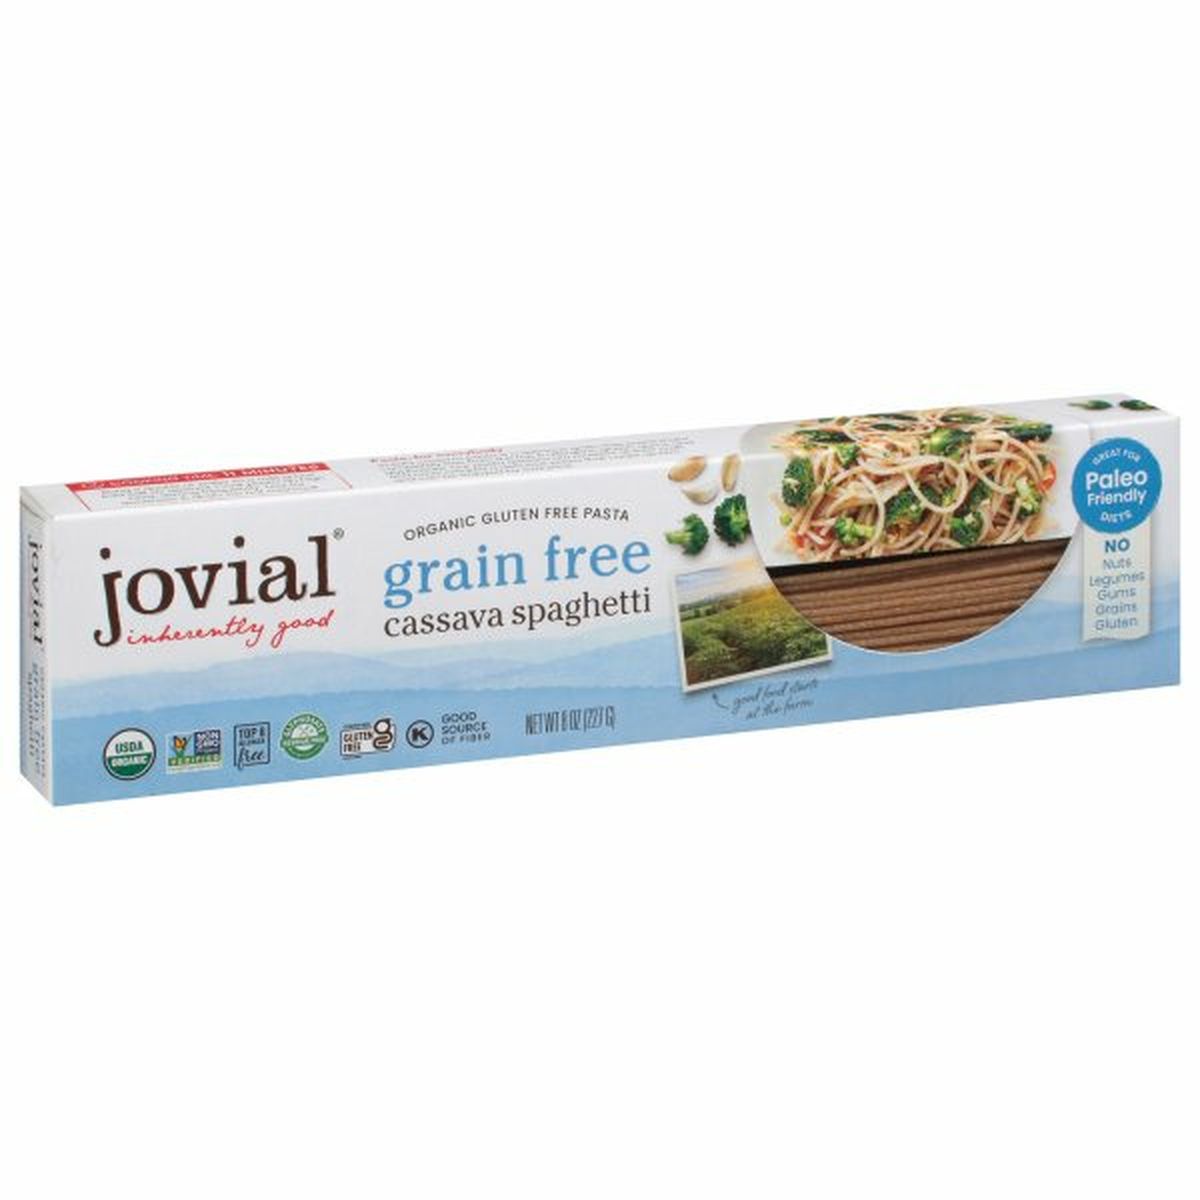 Calories in Jovial Pasta, Cassava Spaghetti, Grain Free